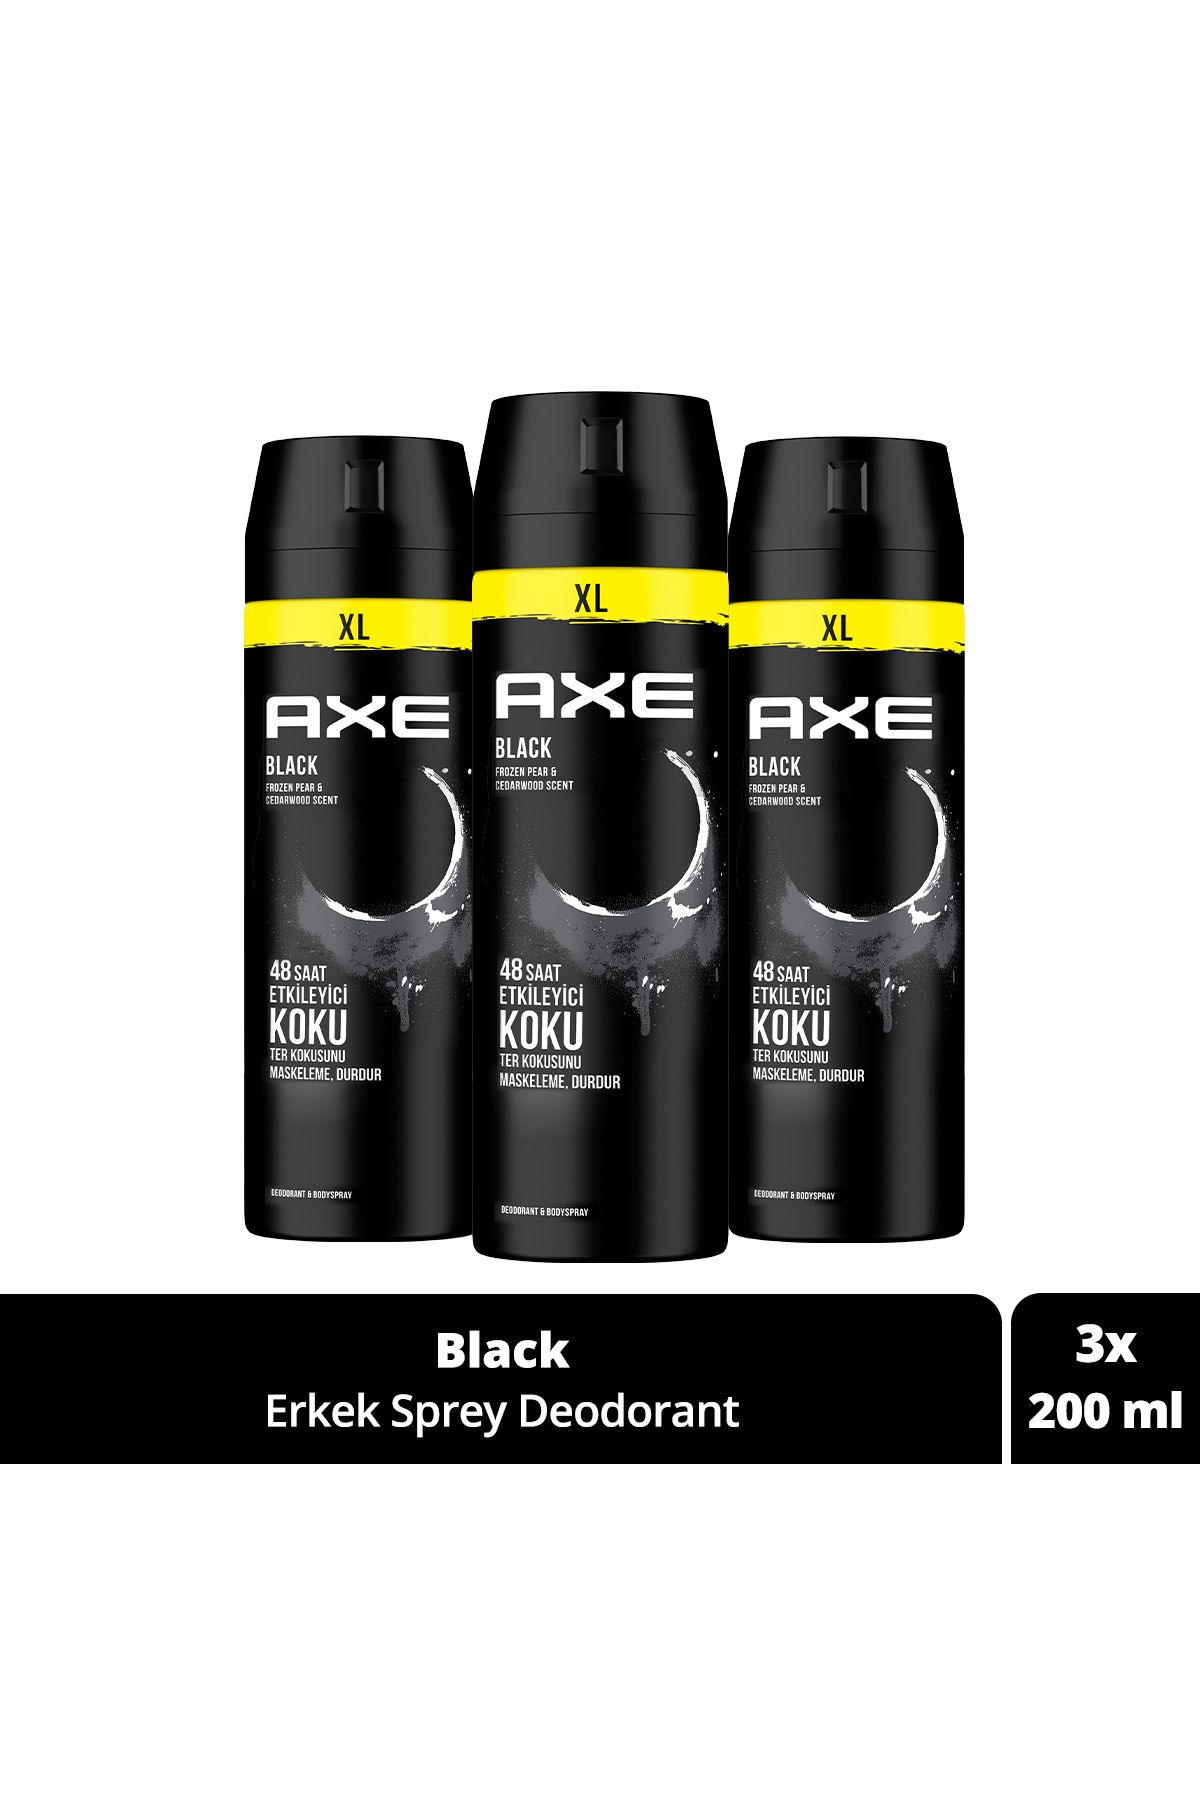 Axe Erkek Sprey Deodorant Black Xl 48 Saat Etkileyici Koku 200 ml X3 Adet